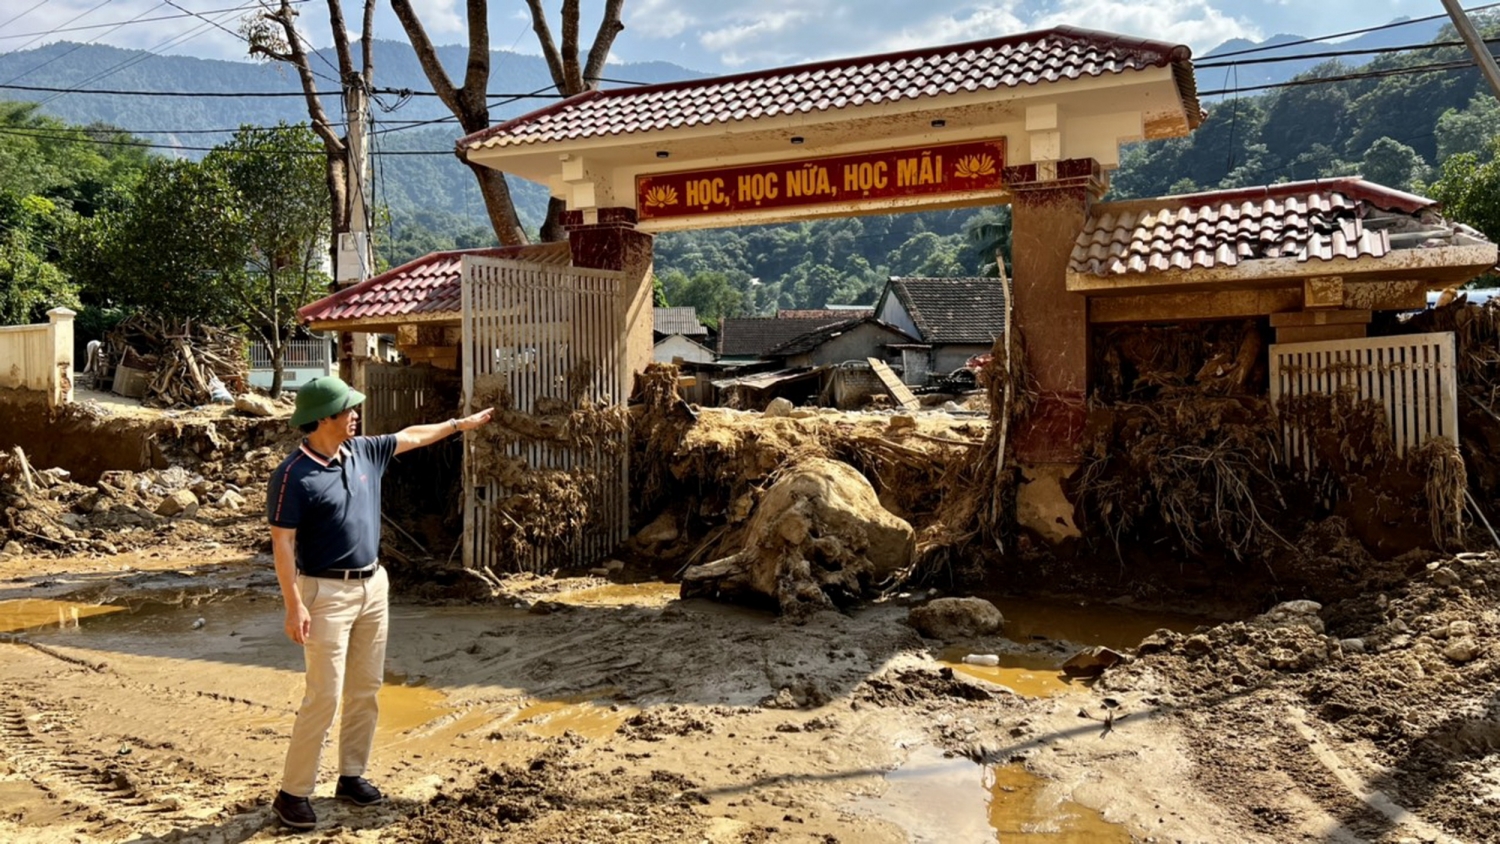 Trung tâm chính trị huyện Kỳ Sơn ngổn ngang trong bùn đất